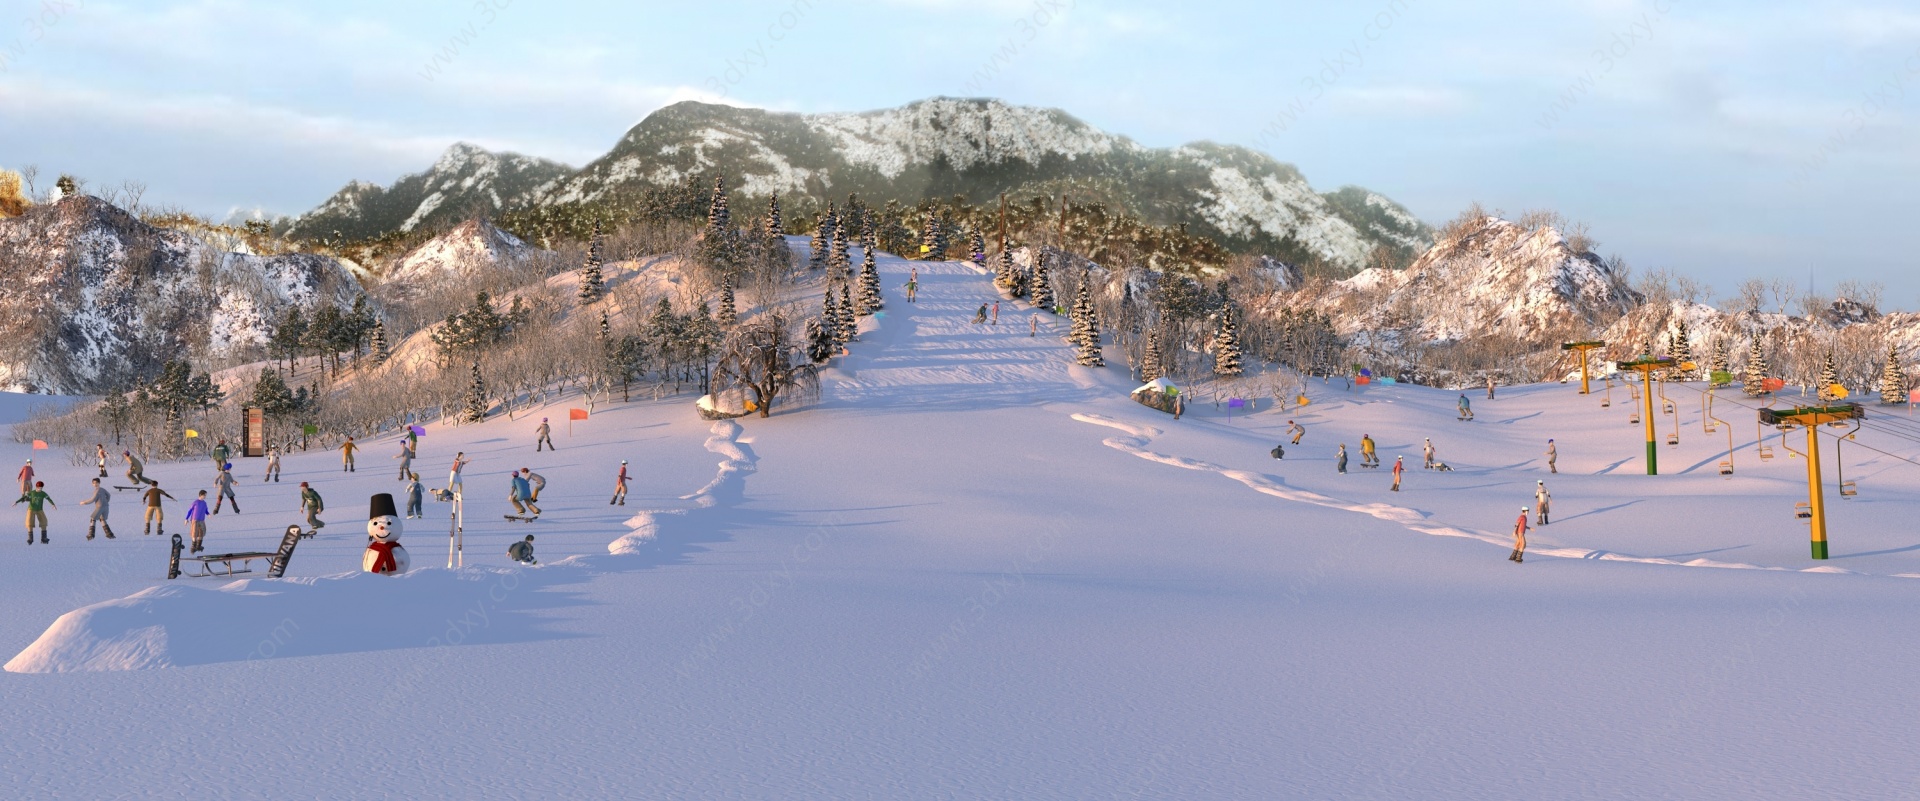 中式雪山滑雪场冬季滑雪场3D模型